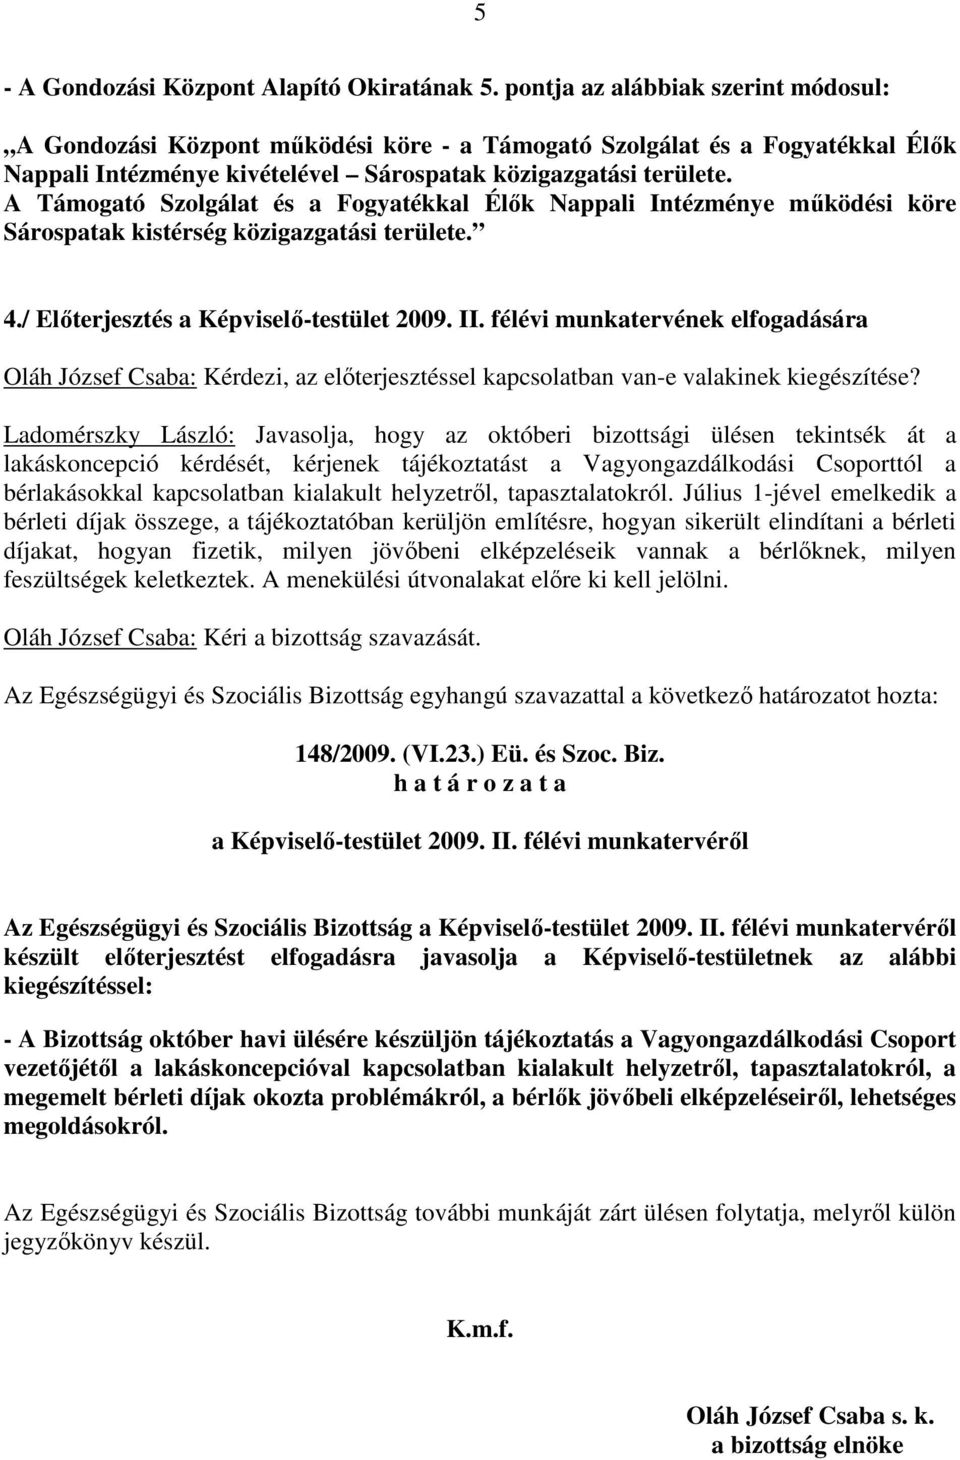 A Támogató Szolgálat és a Fogyatékkal Élık Nappali Intézménye mőködési köre Sárospatak kistérség közigazgatási területe. 4./ Elıterjesztés a Képviselı-testület 2009. II.